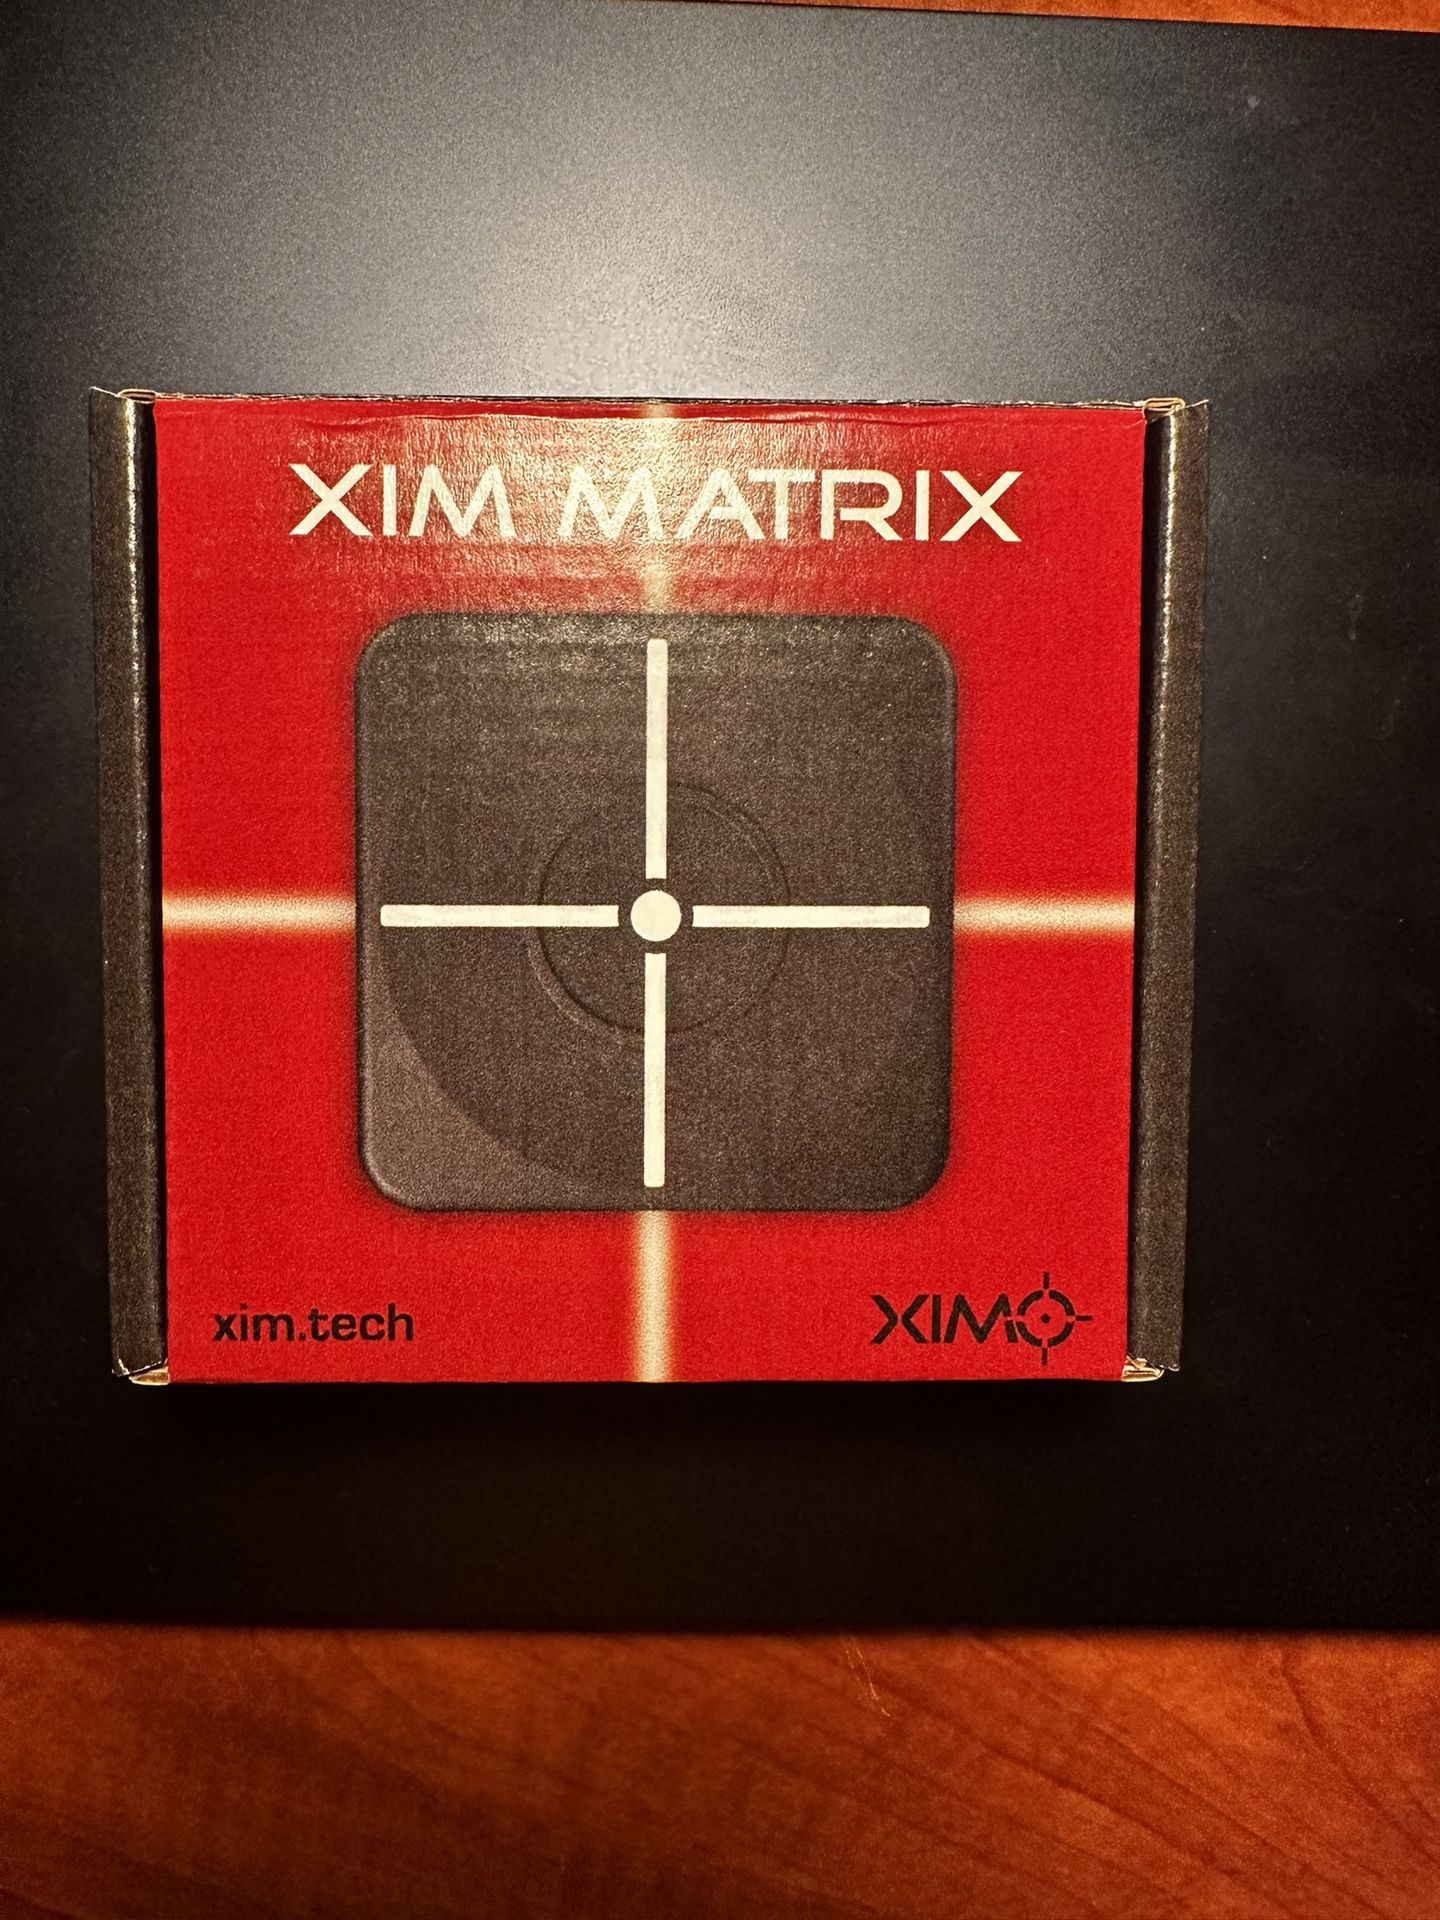 Xim Matrix for Sale in Pocatello, ID - OfferUp